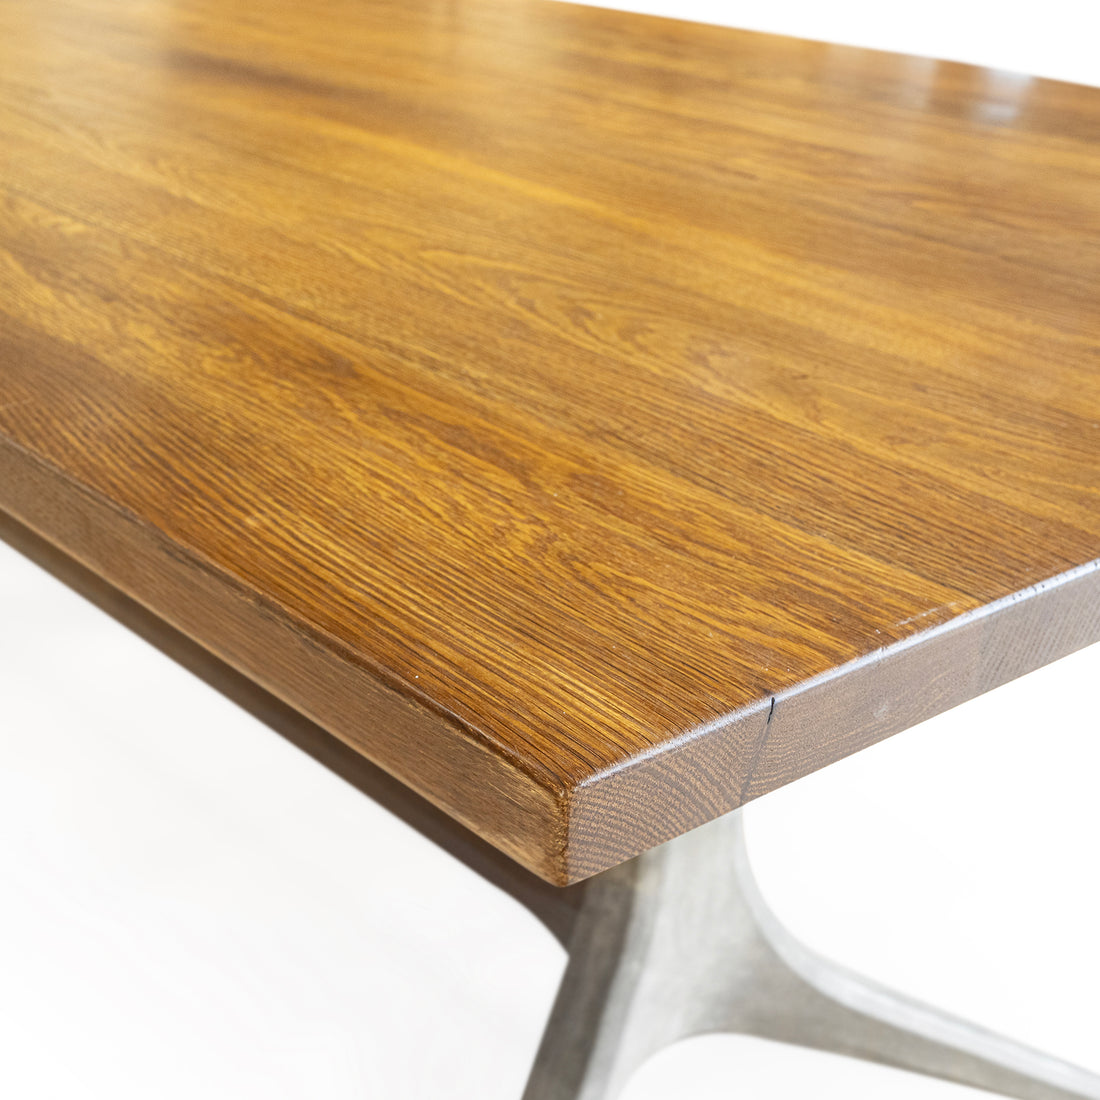 DISTRICT 8 Kahn Trestle Oak & Concrete Table